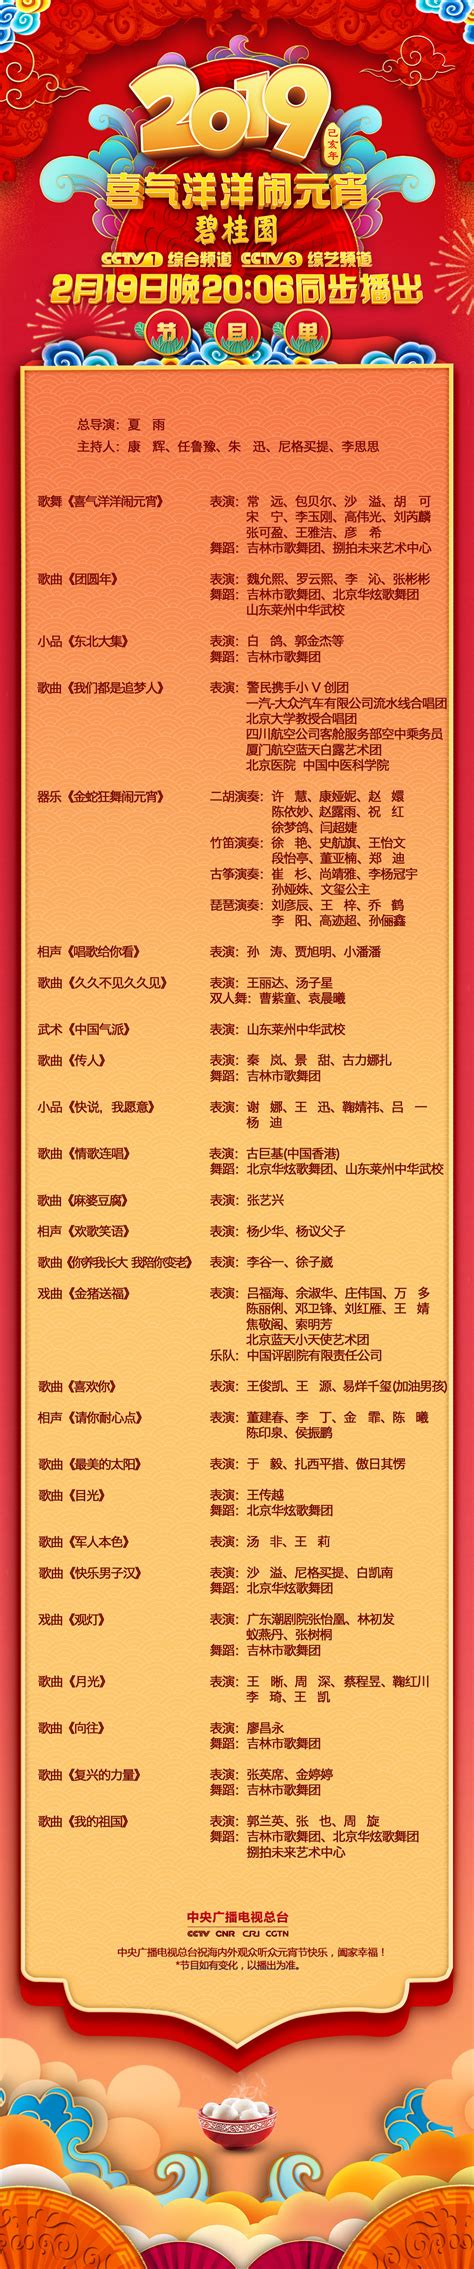 中央台节目表